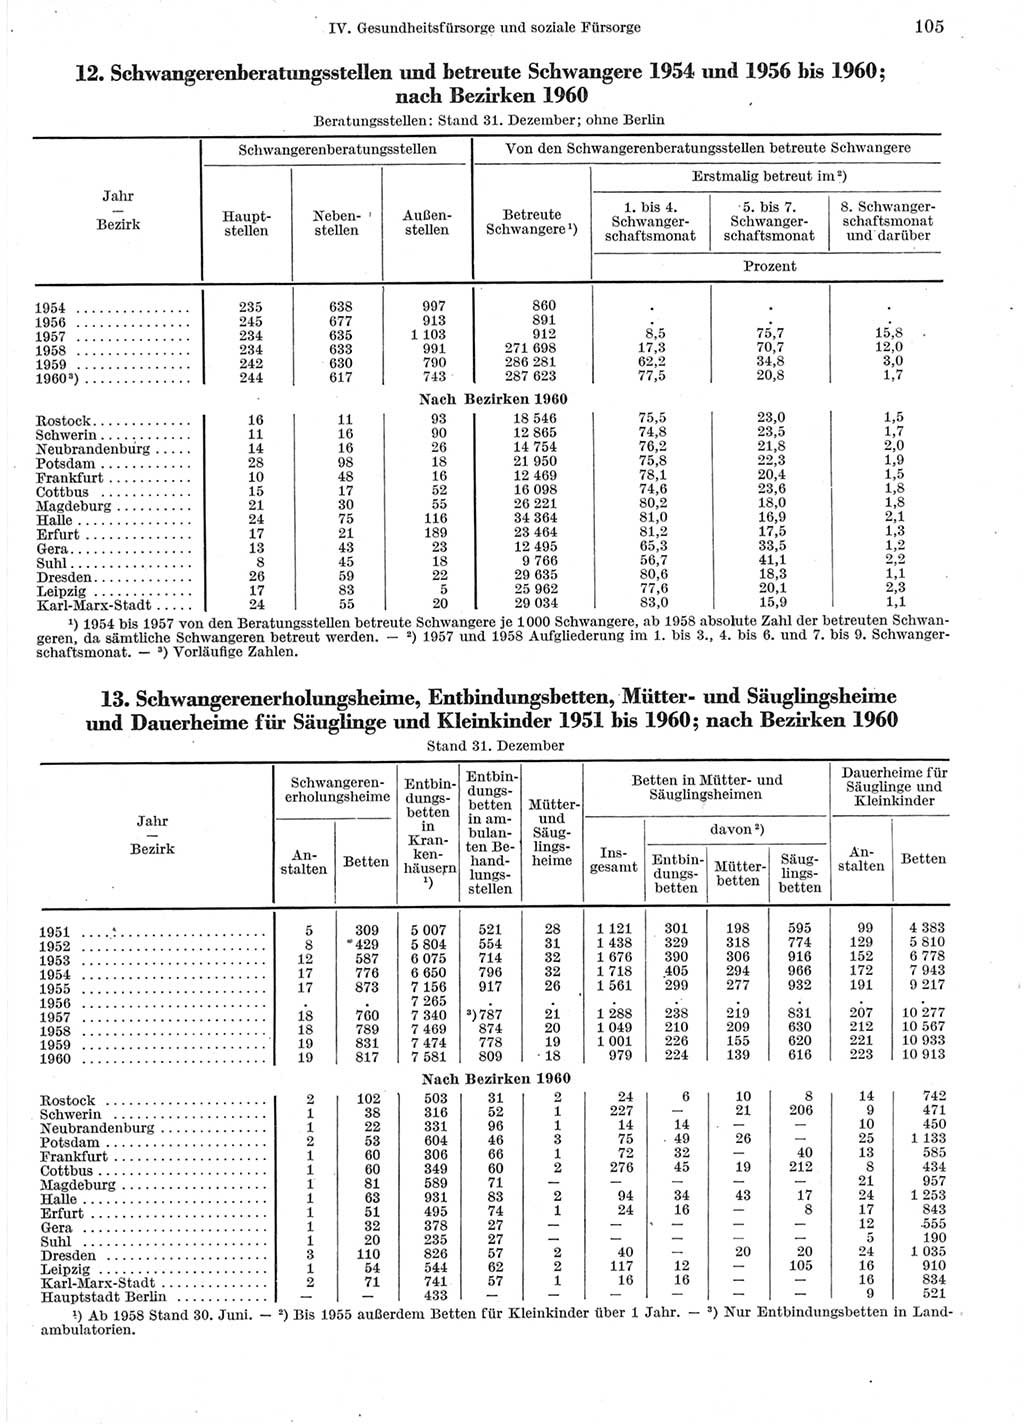 Statistisches Jahrbuch der Deutschen Demokratischen Republik (DDR) 1960-1961, Seite 105 (Stat. Jb. DDR 1960-1961, S. 105)